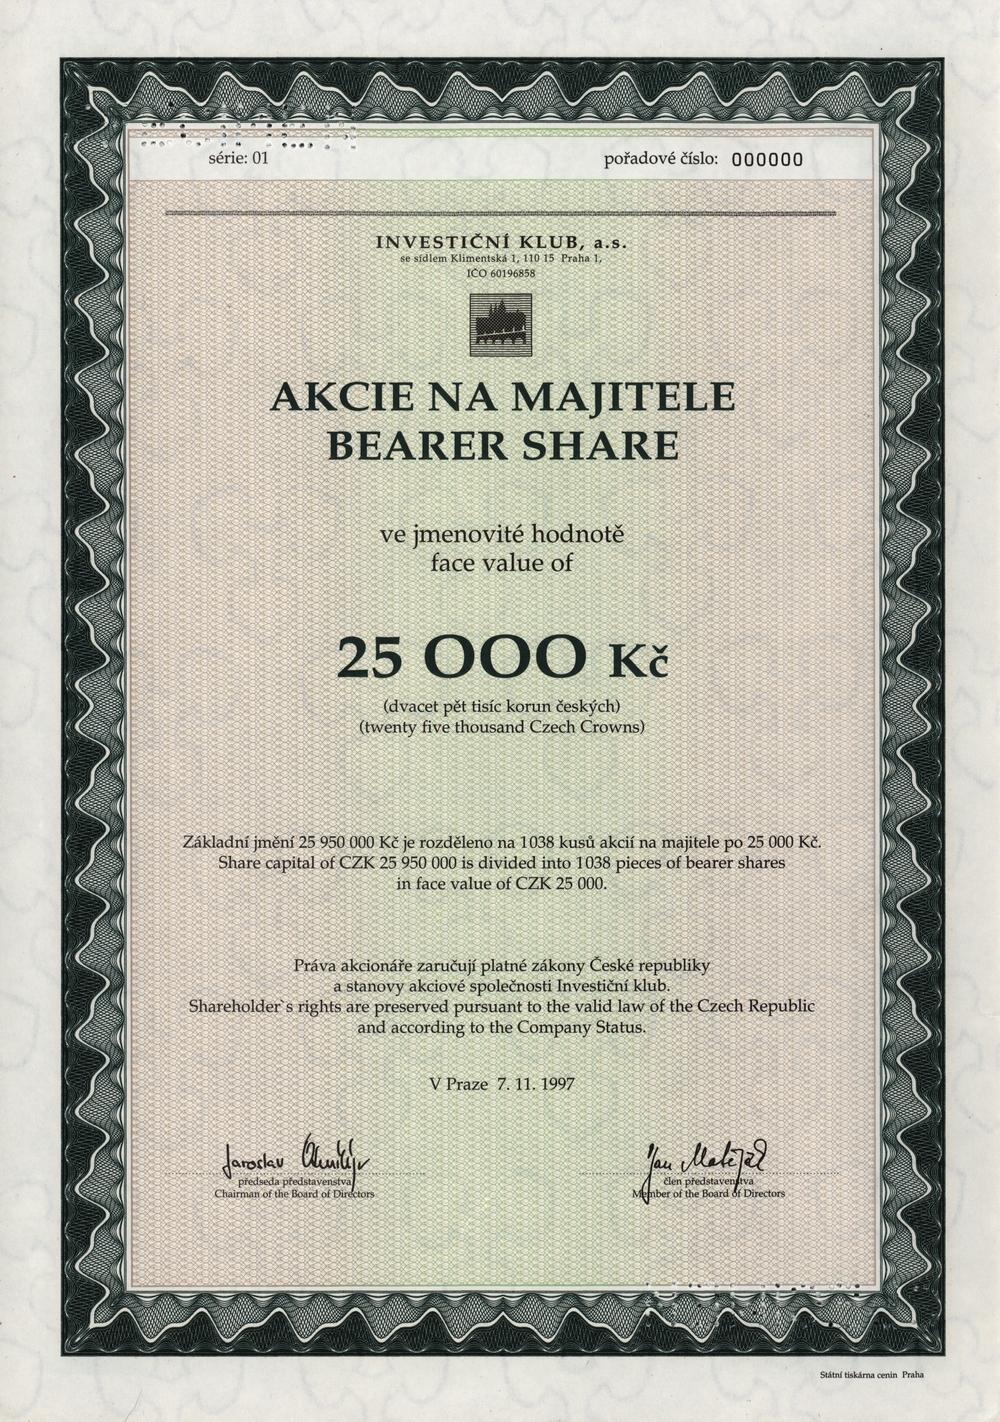 INVESTIČNÍ KLUB, a.s., Akcie na 25000 Kč, Praha 1997